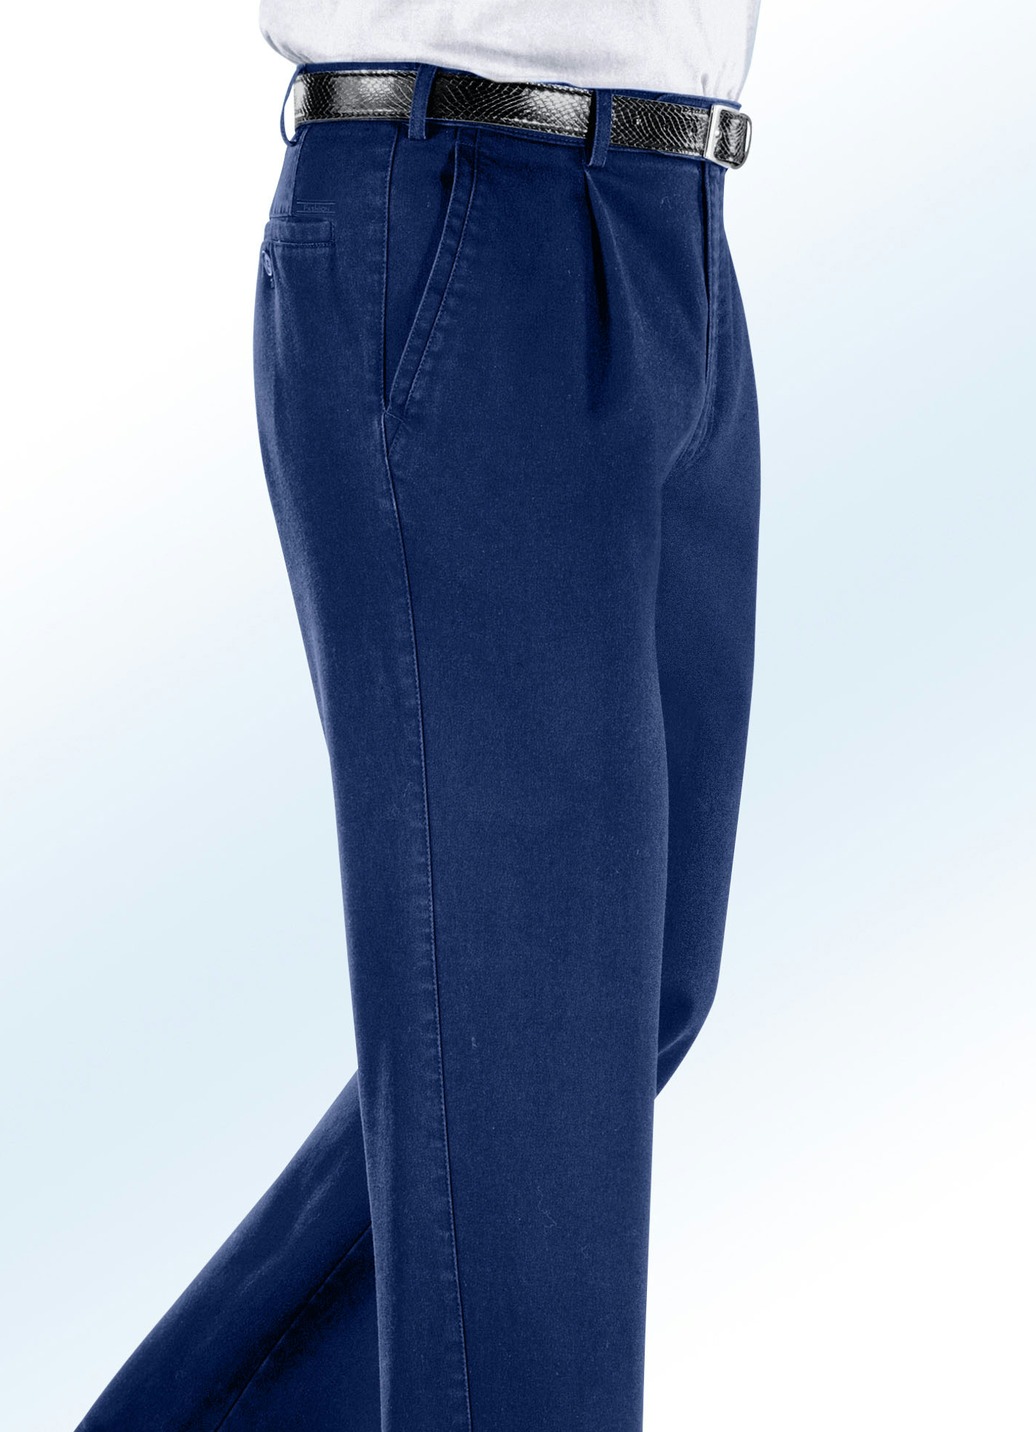 Bügelfreie Jeans mit Zieretikett in 3 Farben, Jeansblau, Größe 29 von BADER